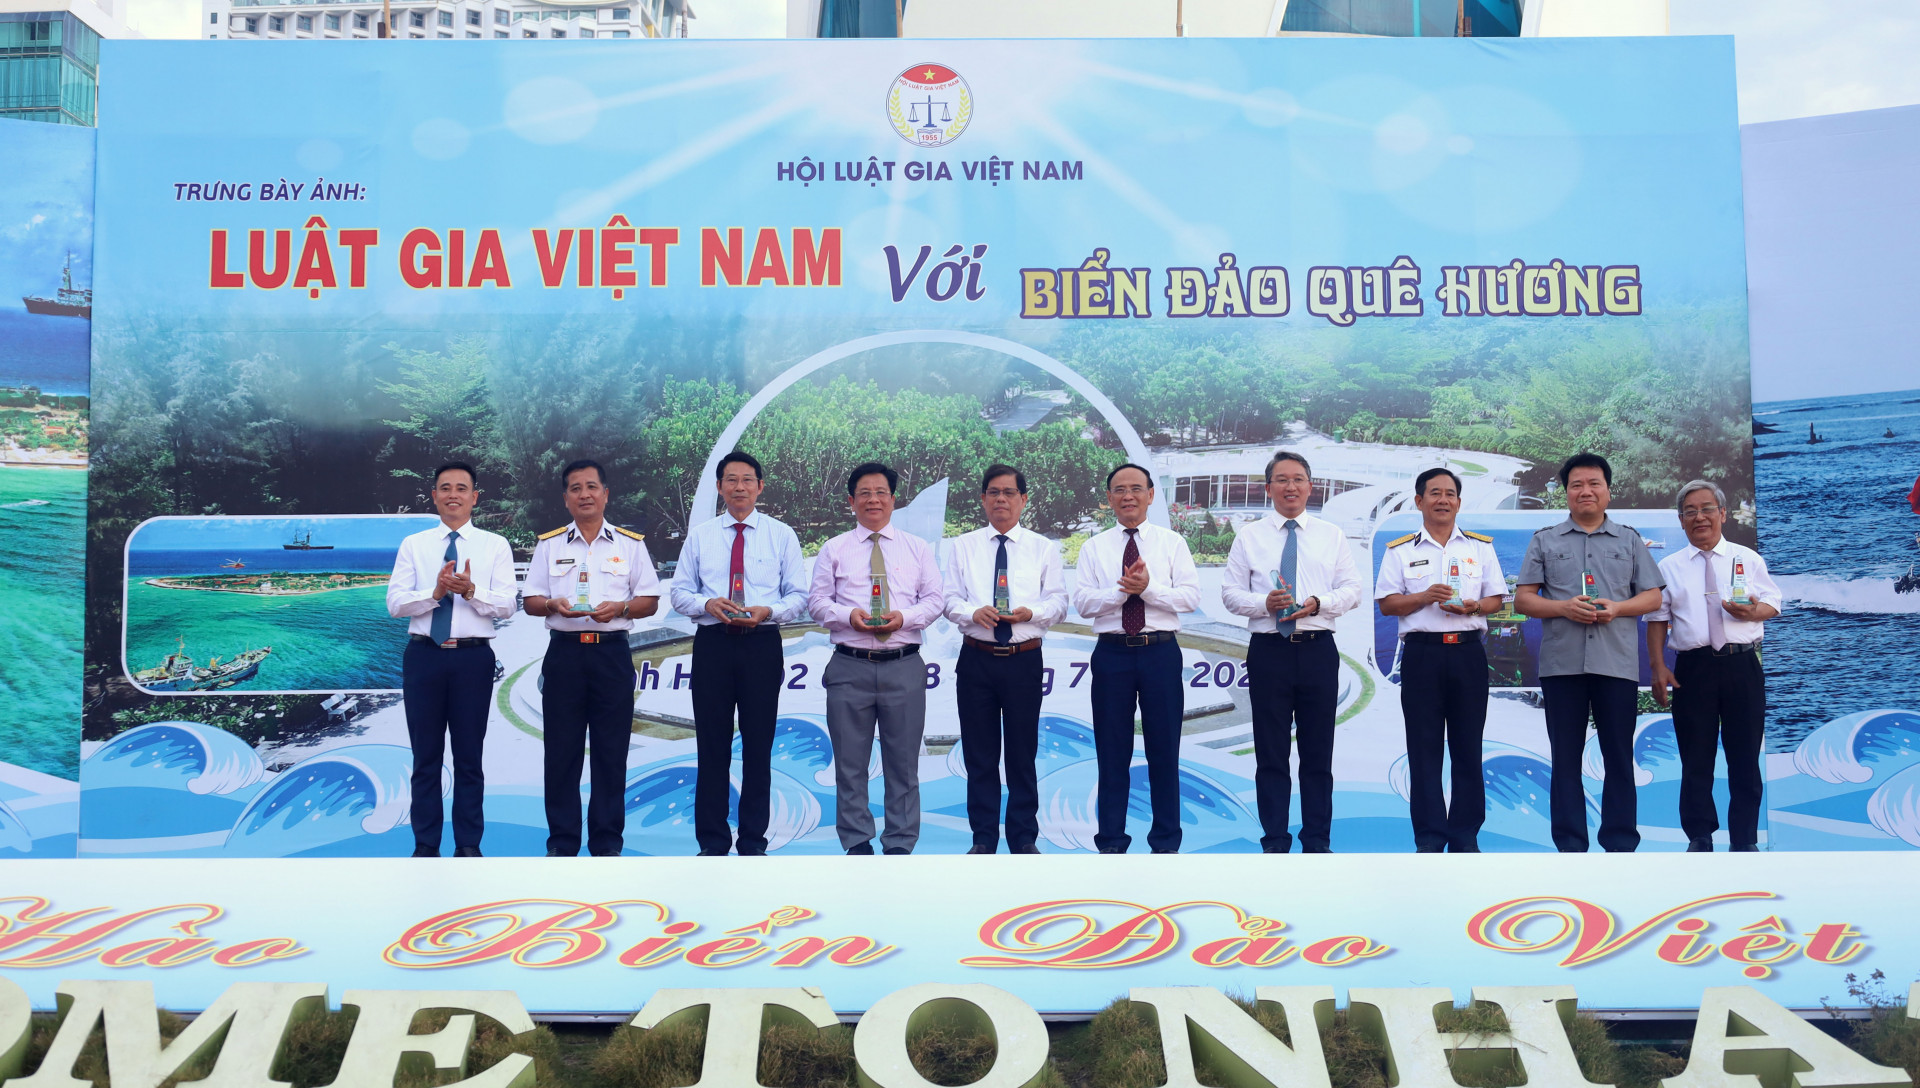 Đại diện Hội Luật gia Việt Nam tặng quà lưu niệm cho các đồng chí lãnh đạo và đại biểu.